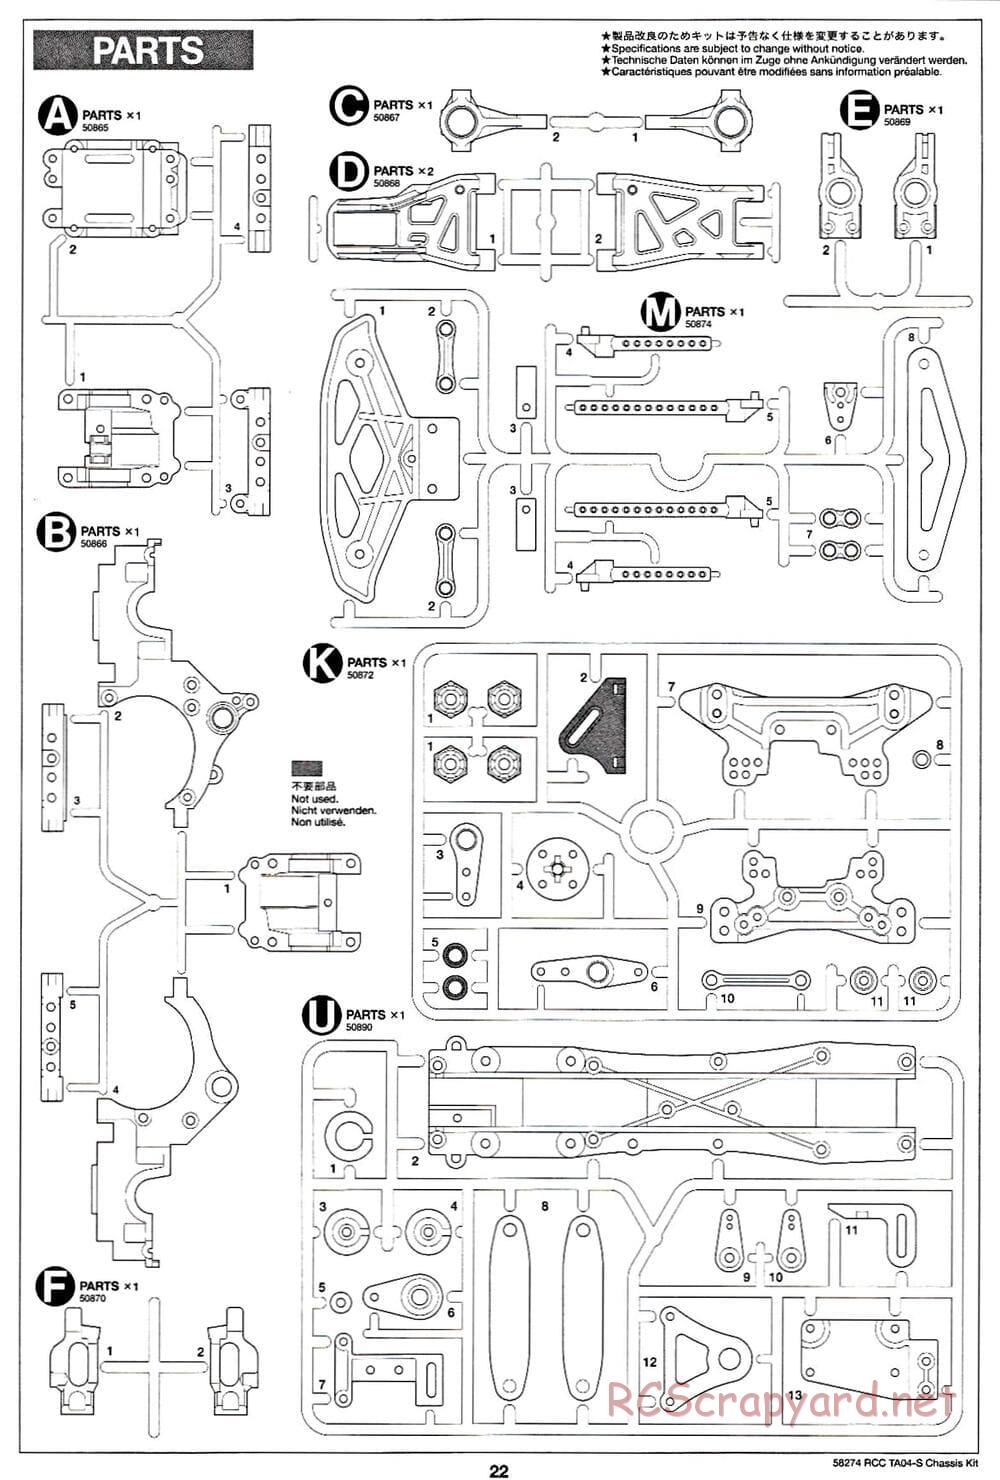 Tamiya - TA-04S Chassis - Manual - Page 22